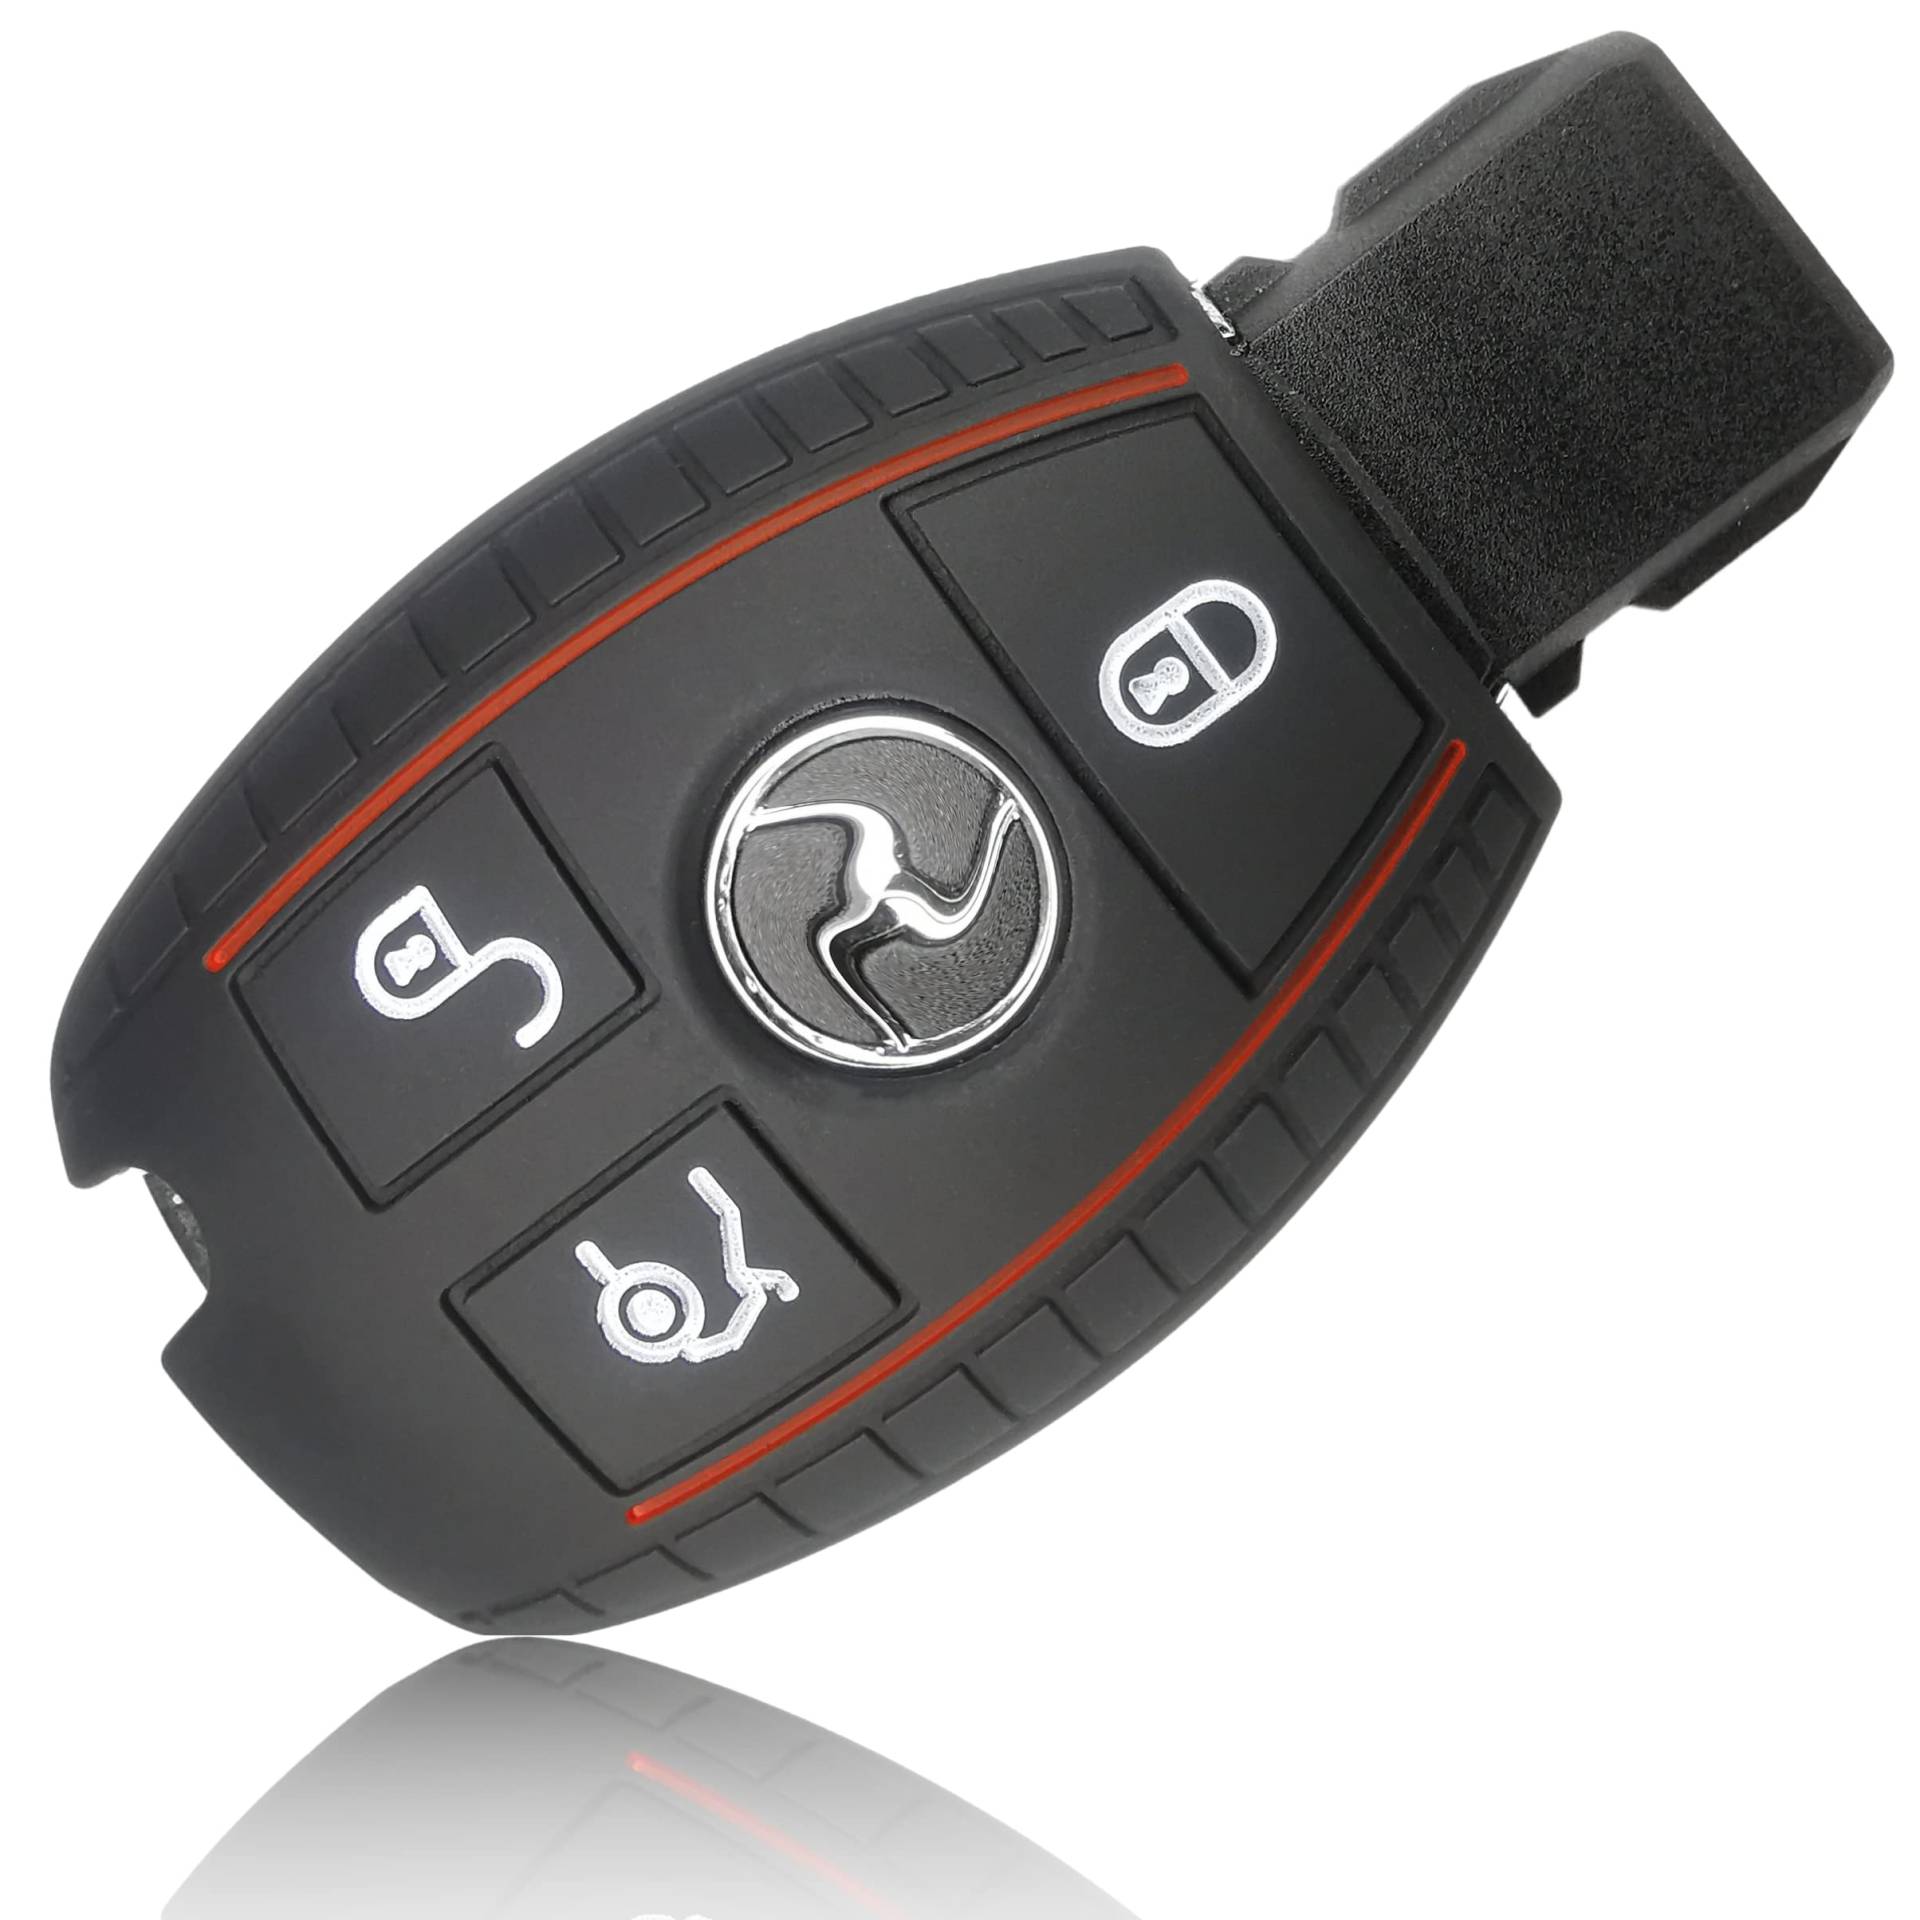 FOAMO Autoschlüssel Hülle kompatibel mit Mercedes Benz 3-Tasten - Silikon Schutzhülle Cover Schlüssel-Hülle in Schwarz-Rot von FOAMO